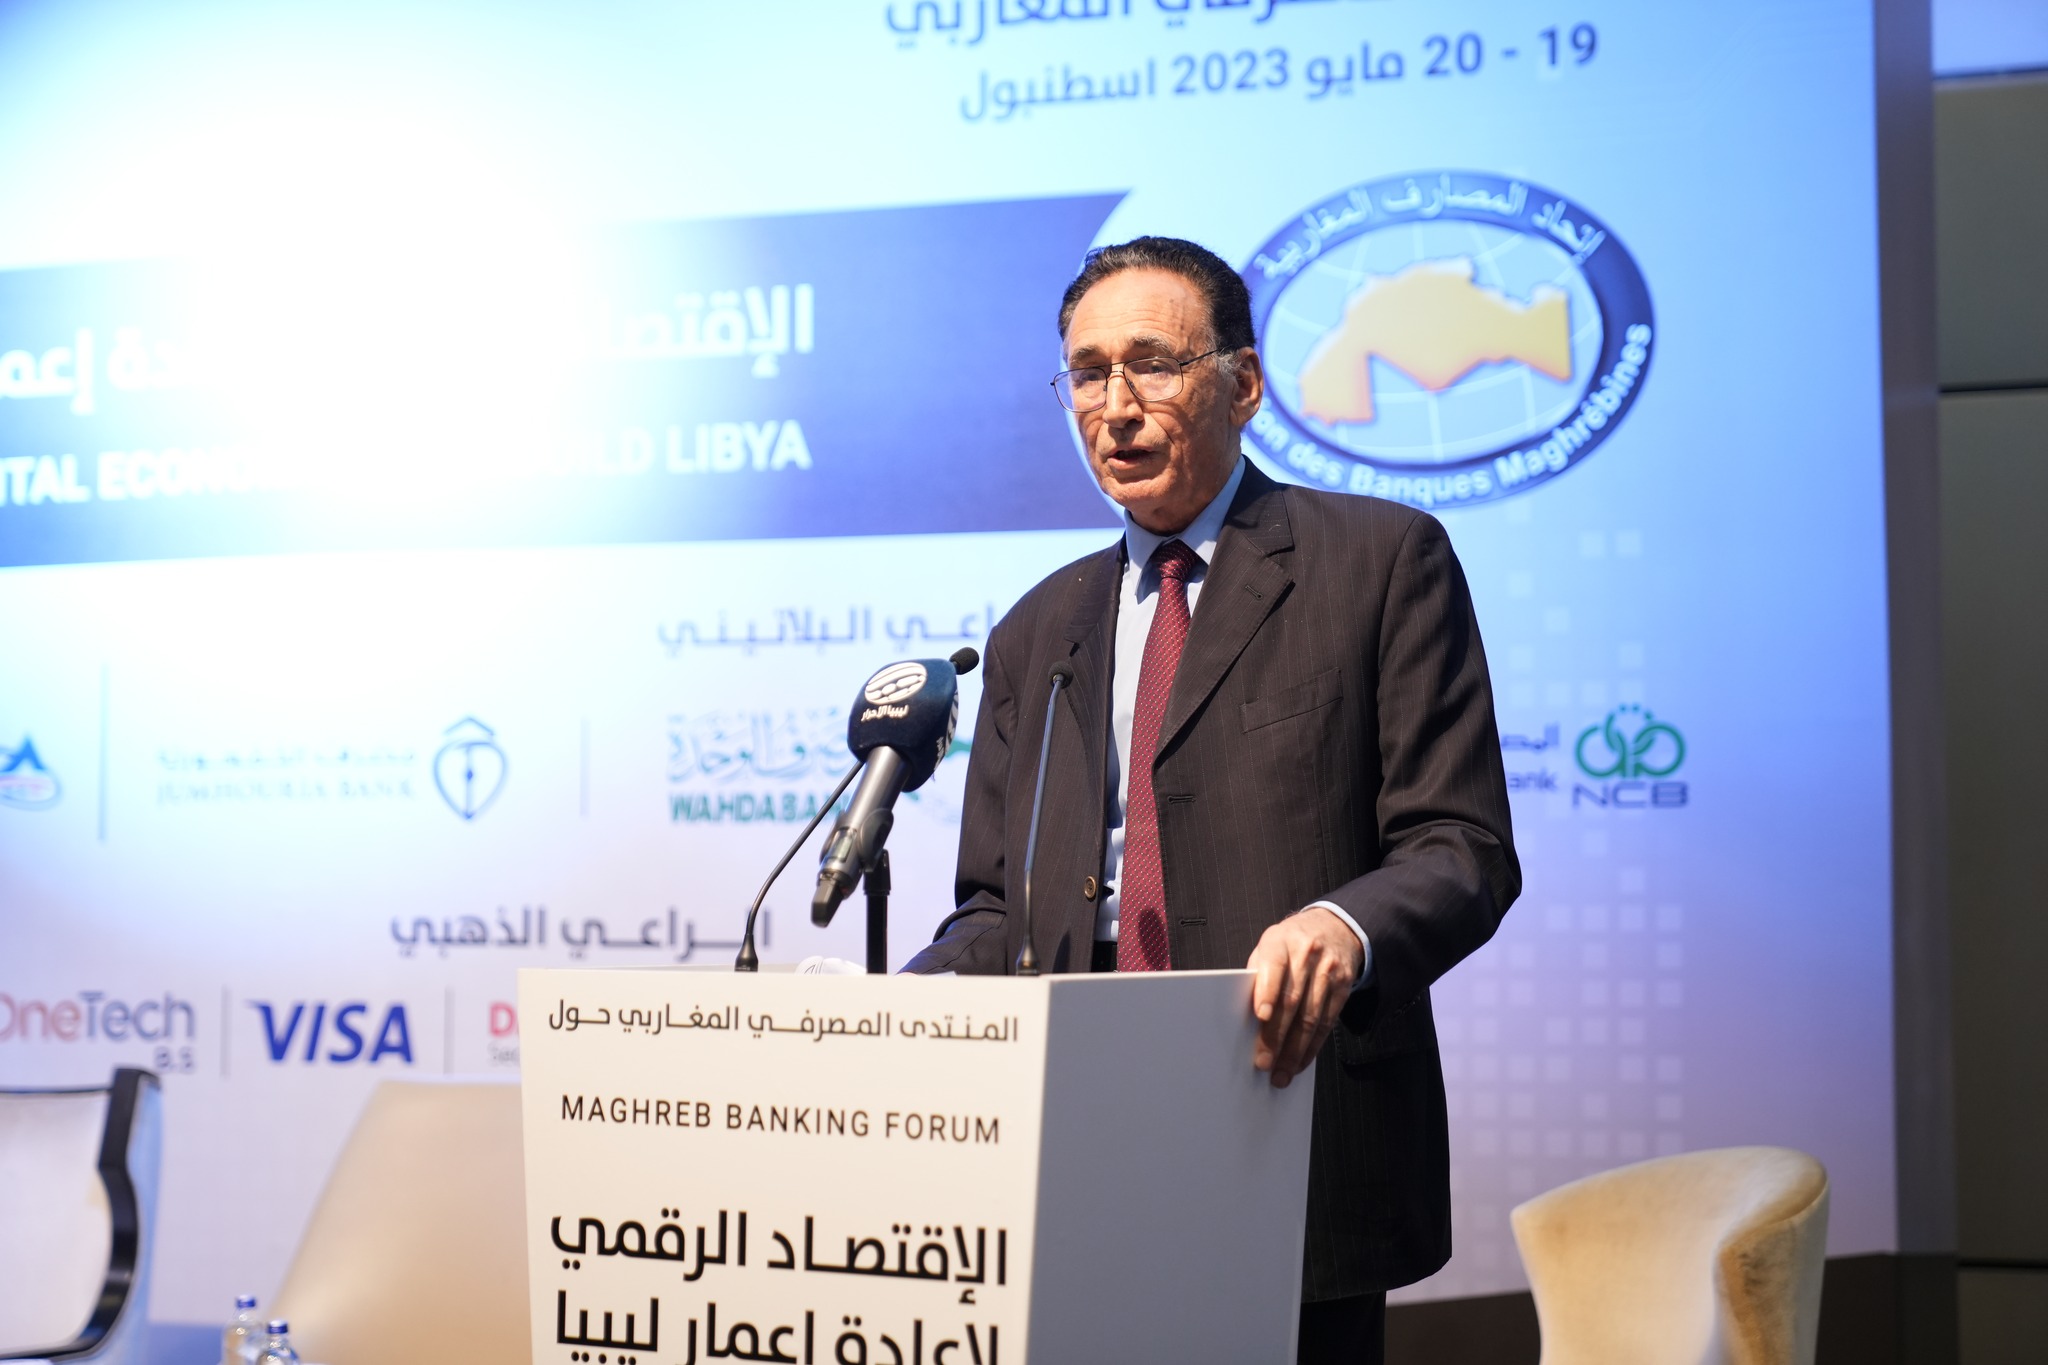 الحويج يدعو إلى تطوير المنظومة المصرفية الليبية والاستفادة من التقنيات الدولية